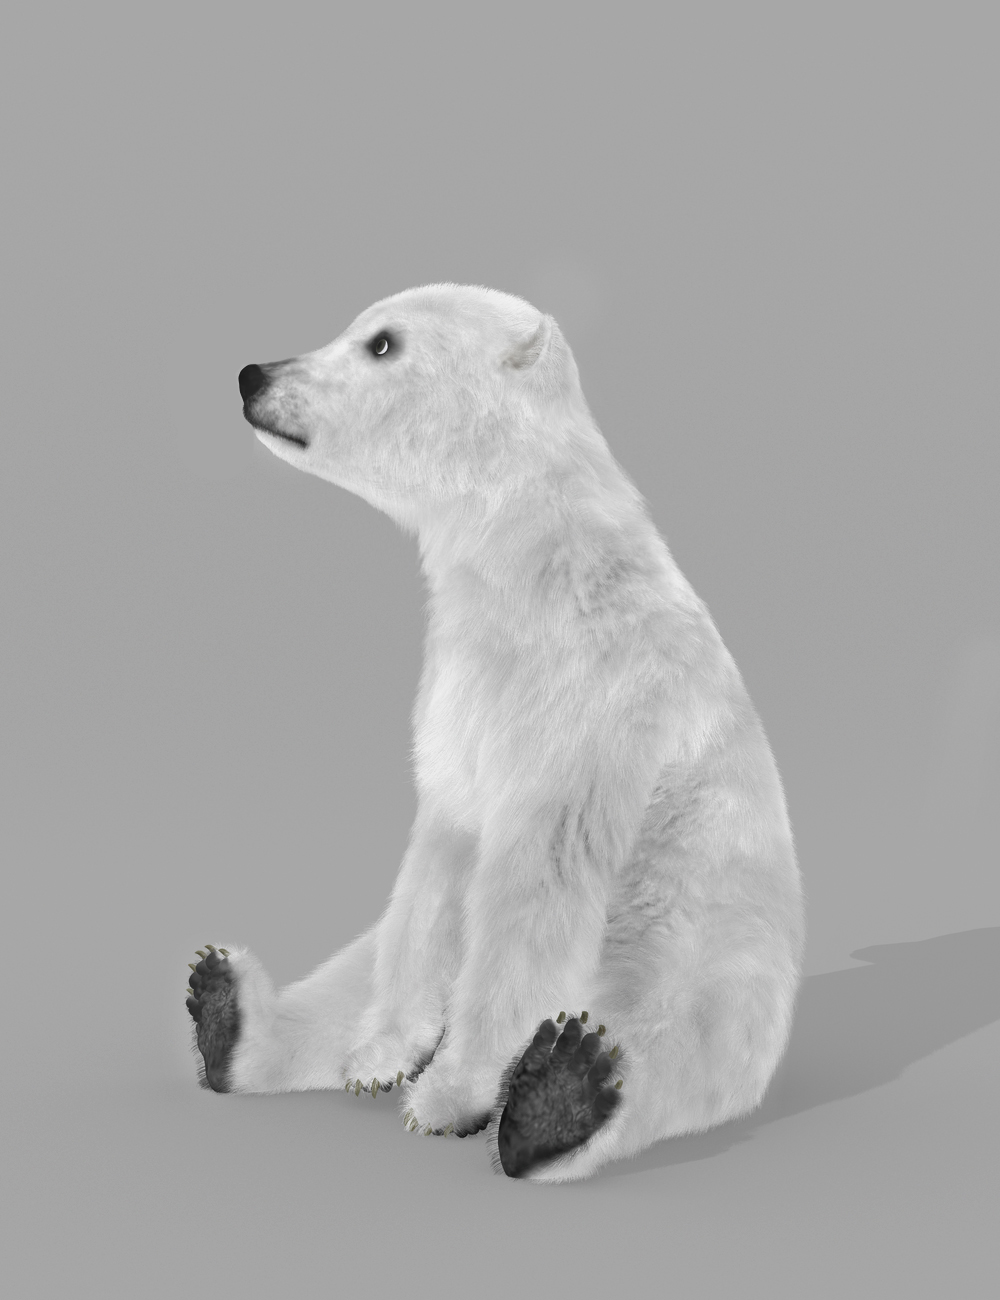 Polar Bear Cub by AM